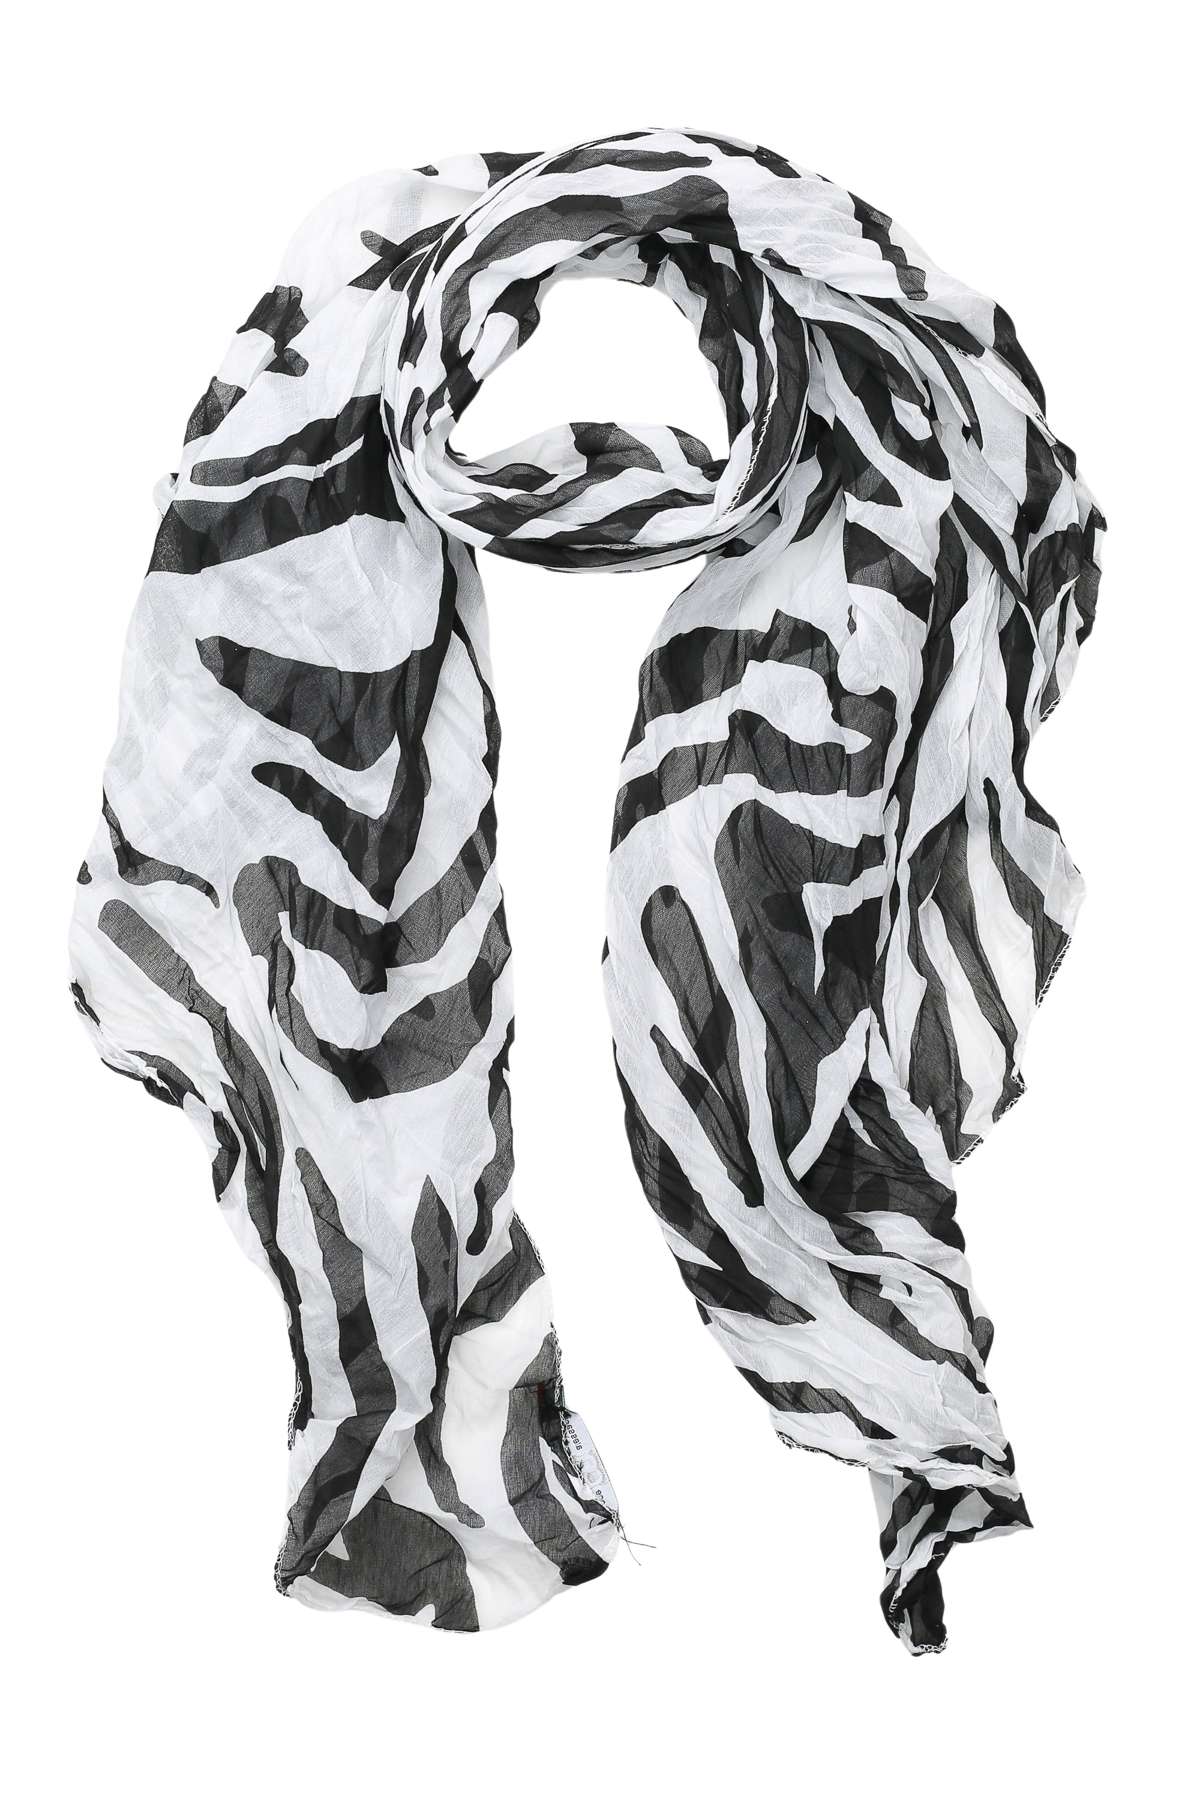 Модный шарф (1 шт.) с узором «зебра», производство Италия.